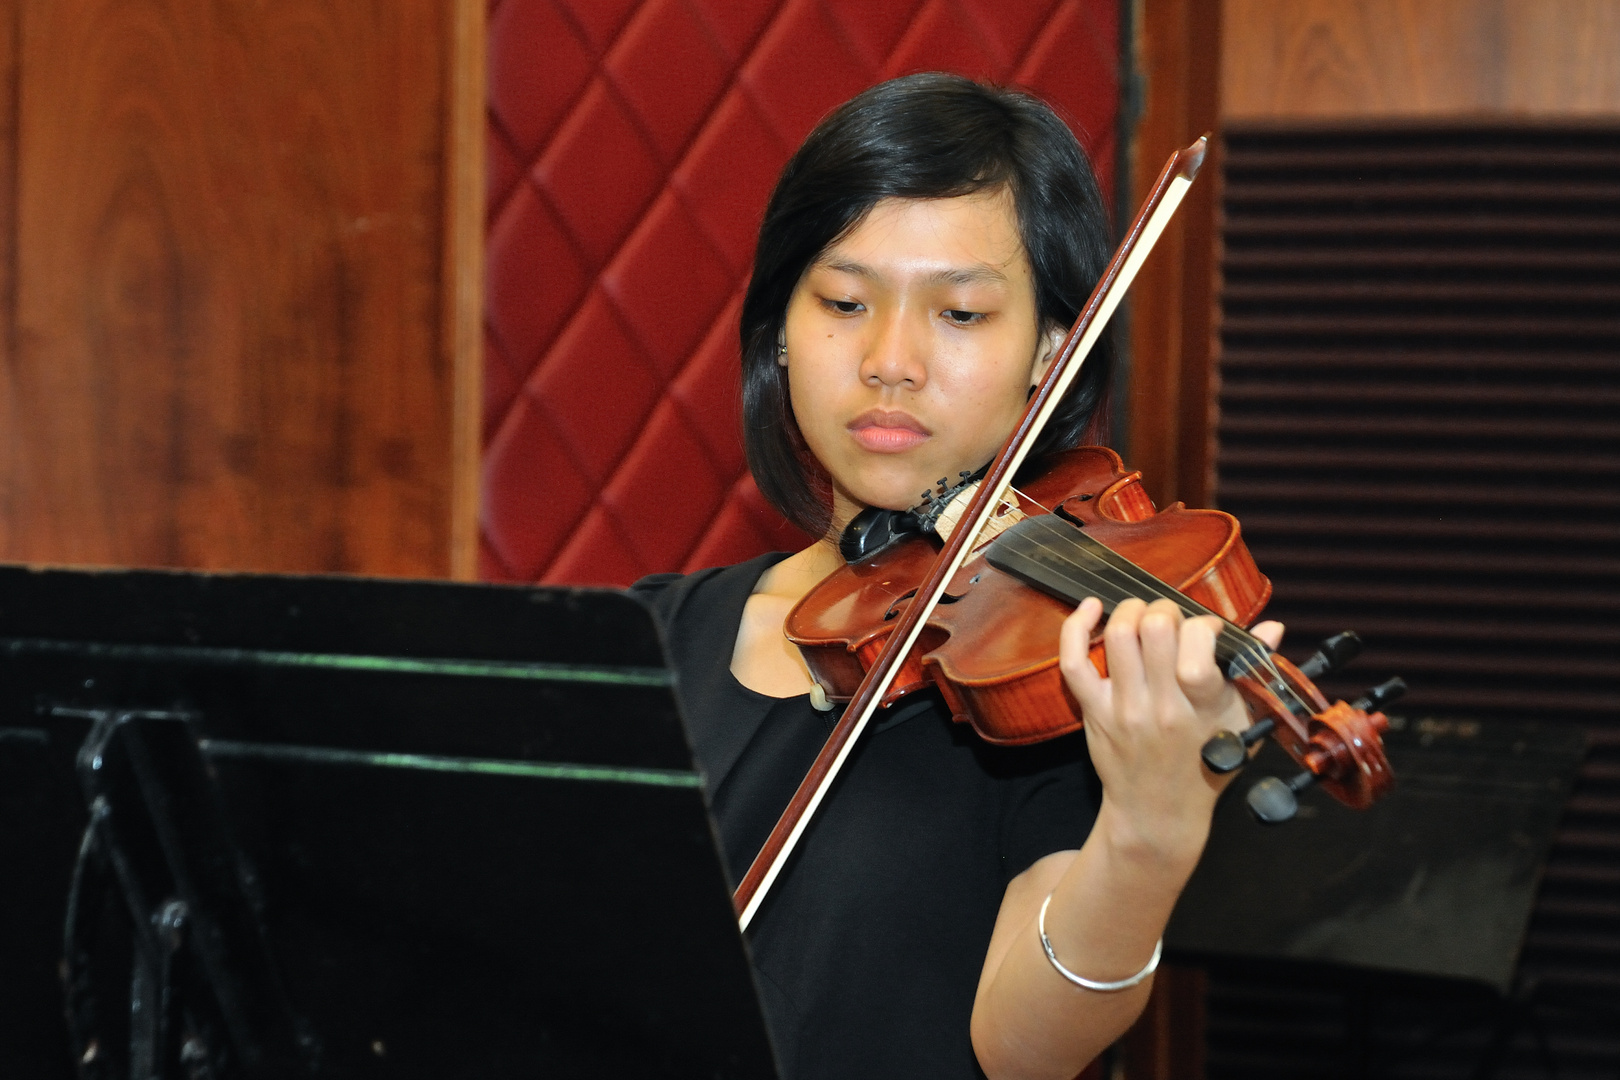 Hoa - the Saigon violin student